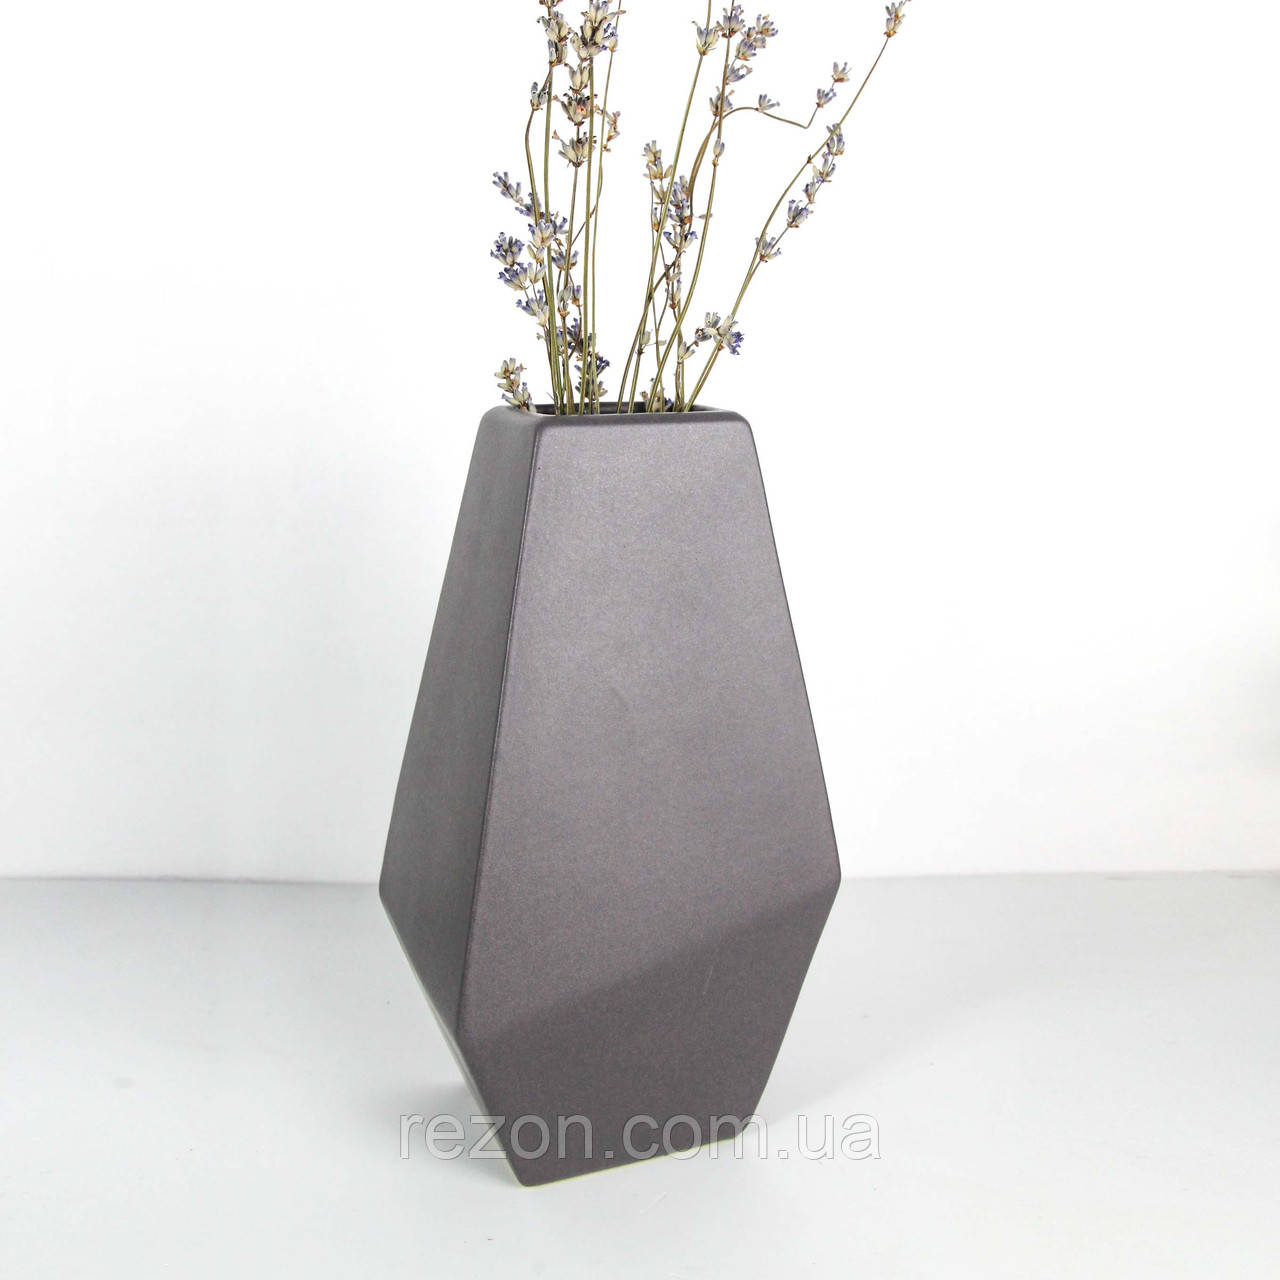 Ваза керамічна для квітів настільна 25 см "Геометрія" сірий мат Rezon V013